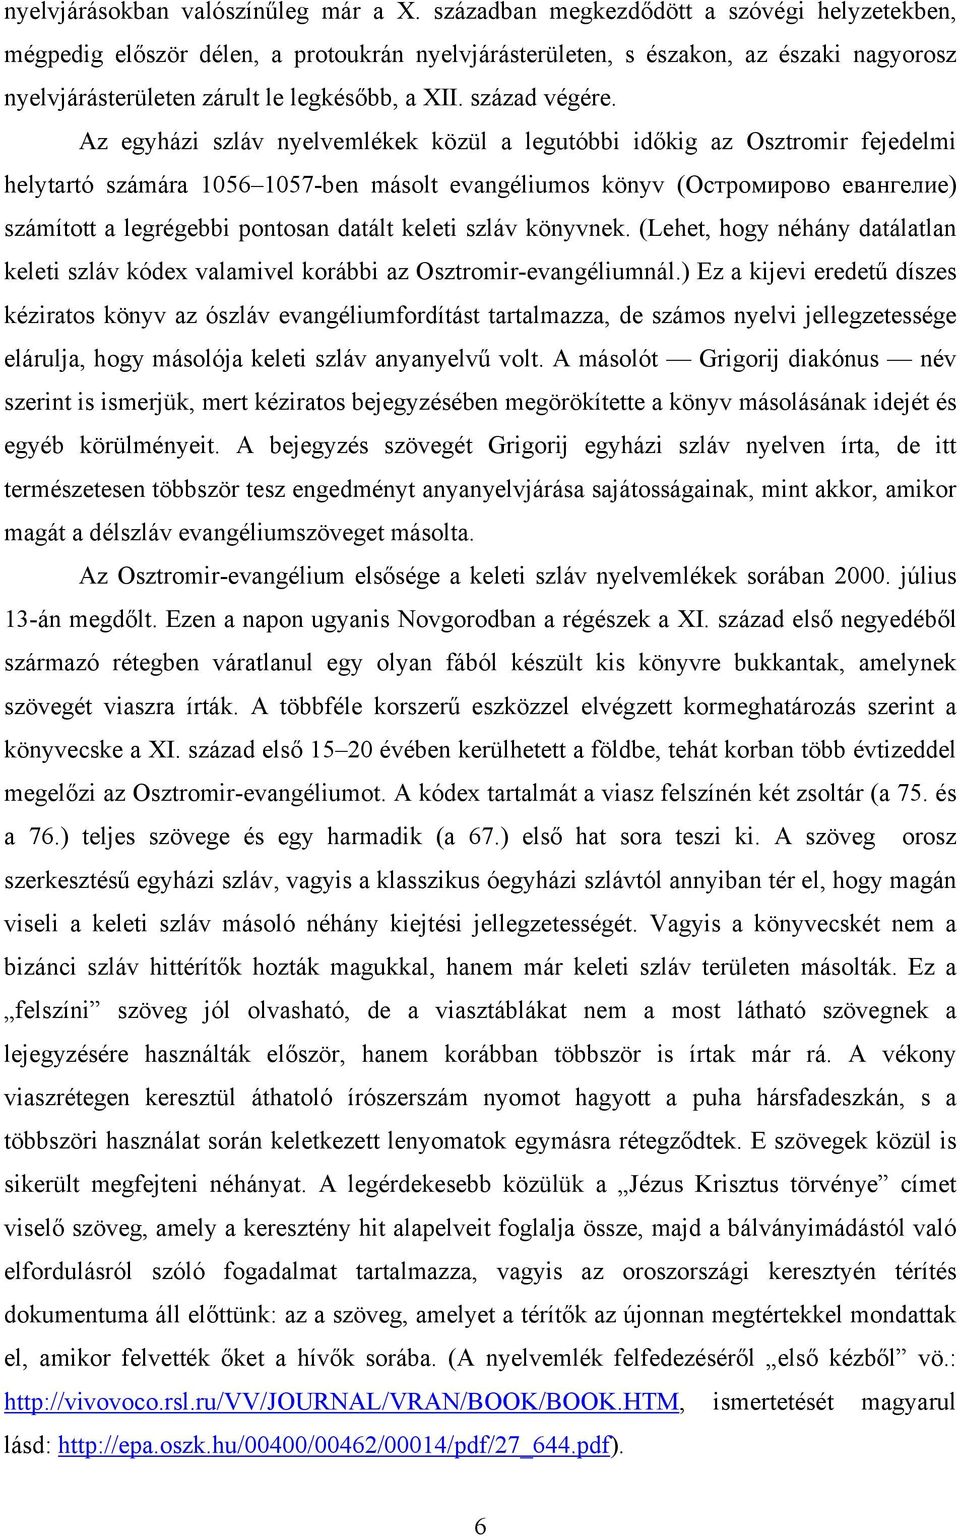 Az egyházi szláv nyelvemlékek közül a legutóbbi időkig az Osztromir fejedelmi helytartó számára 1056 1057-ben másolt evangéliumos könyv (Остромирово евангелие) számított a legrégebbi pontosan datált